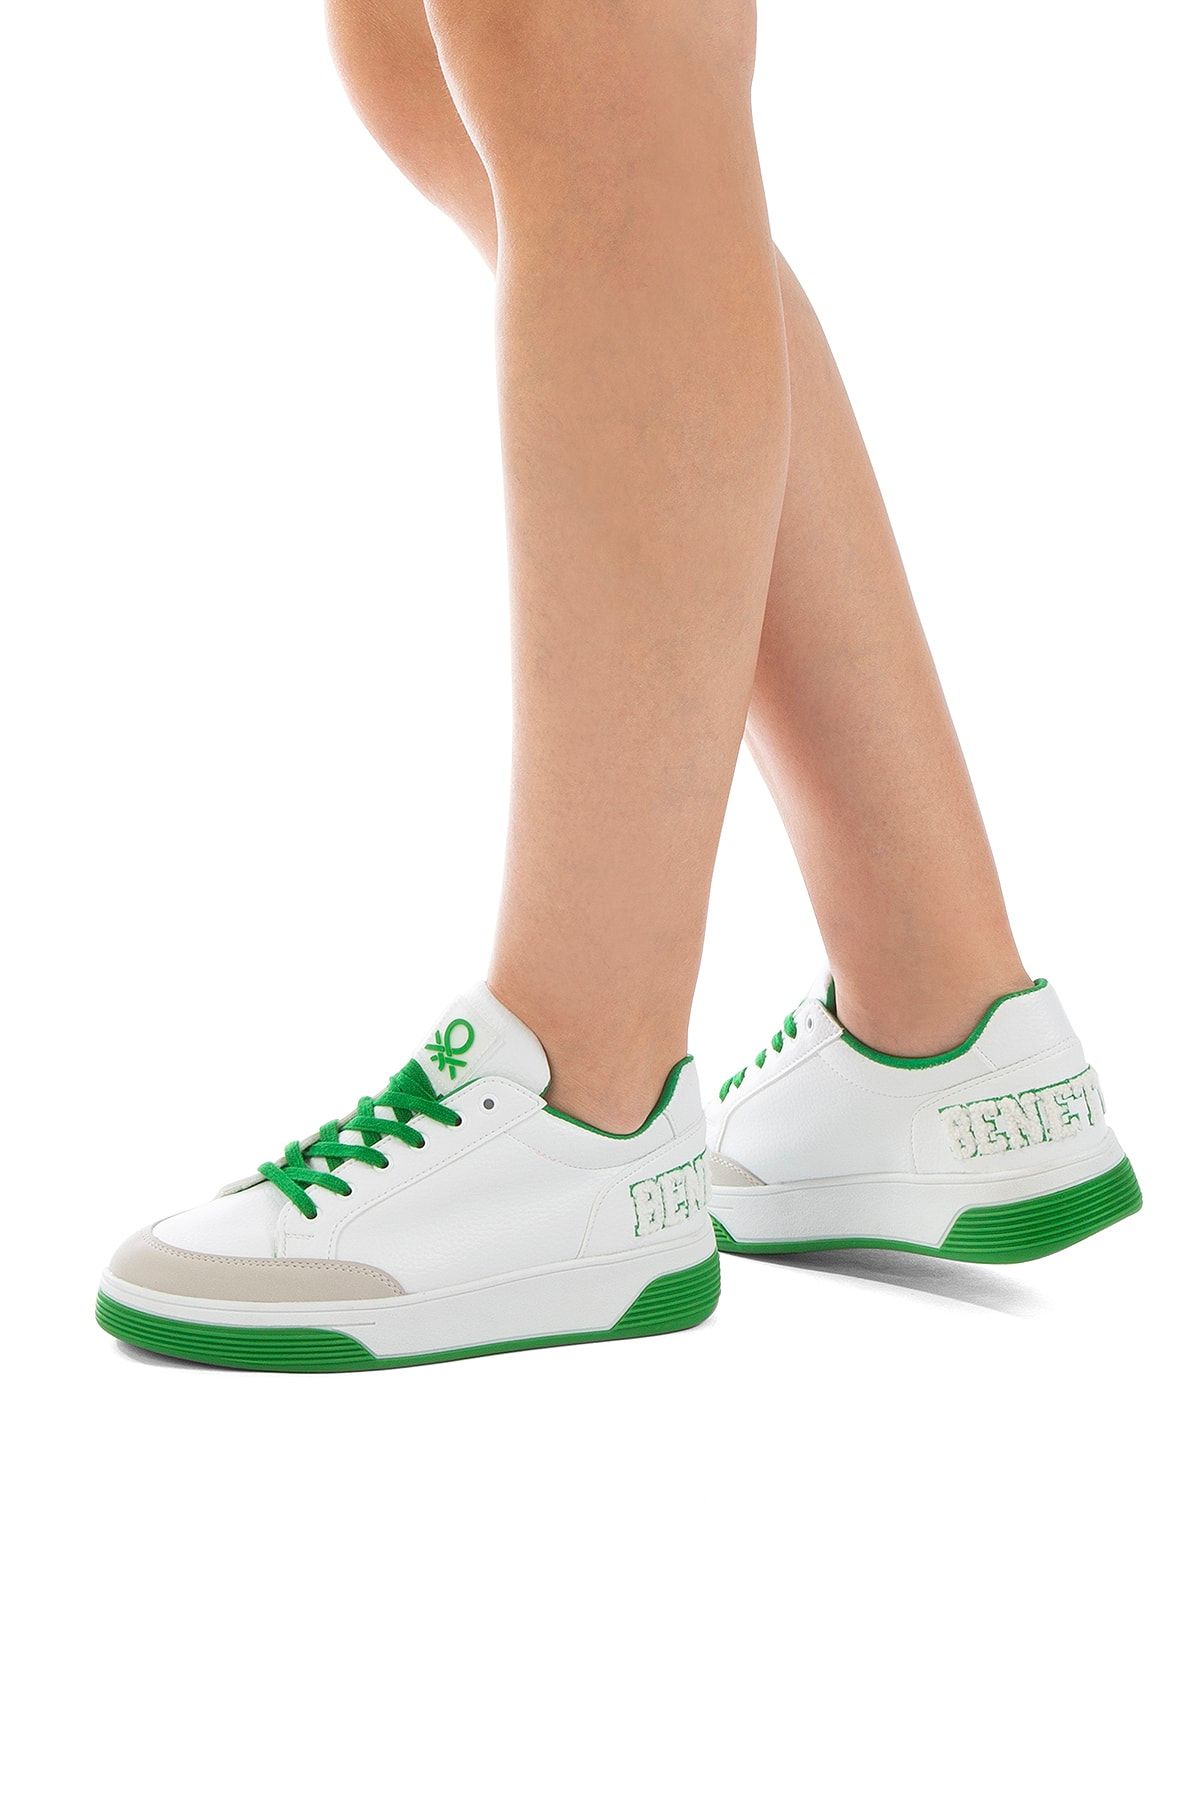 Benetton Bn-30367 Kadın Spor Ayakkabı Beyaz-yeşil